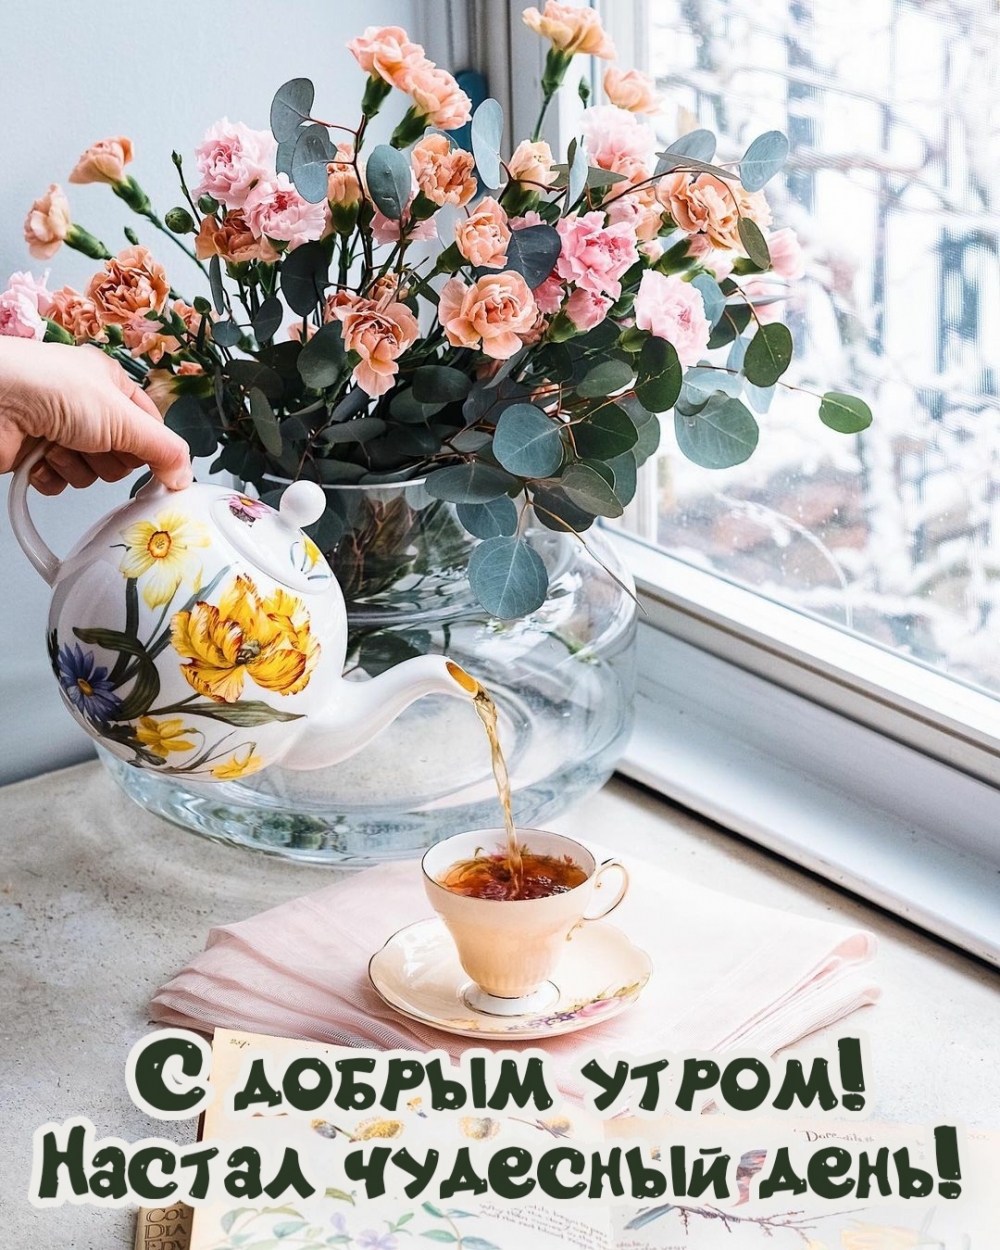 Пожелание доброго утра с цветами и чаем